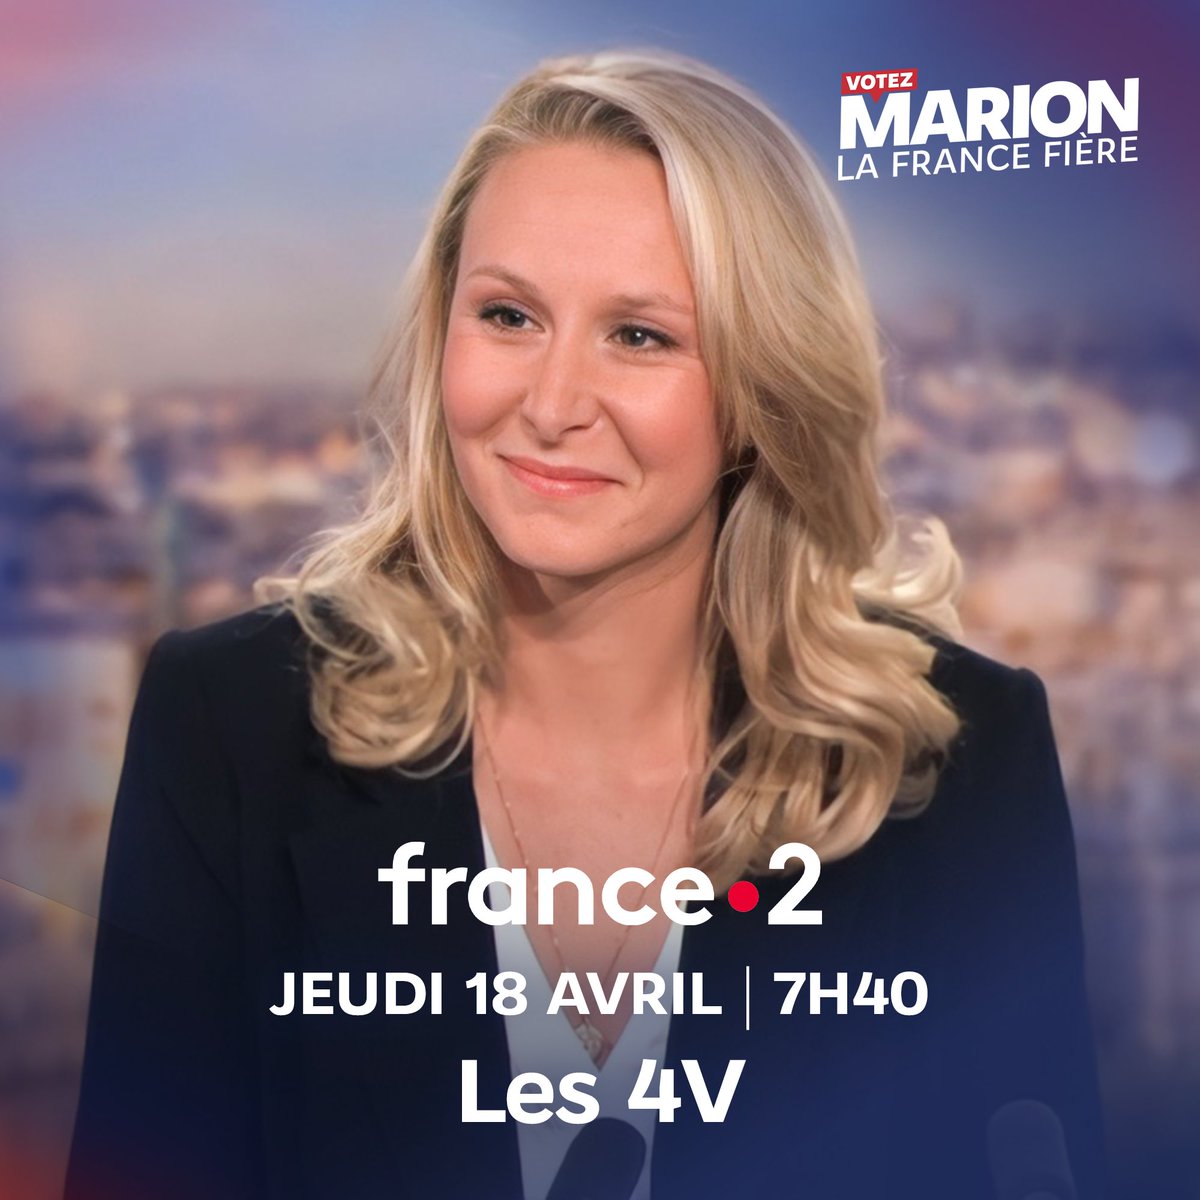 📺 Je vous donne rendez-vous demain matin à partir de 7h40 sur France 2. #VotezMarion #Les4V